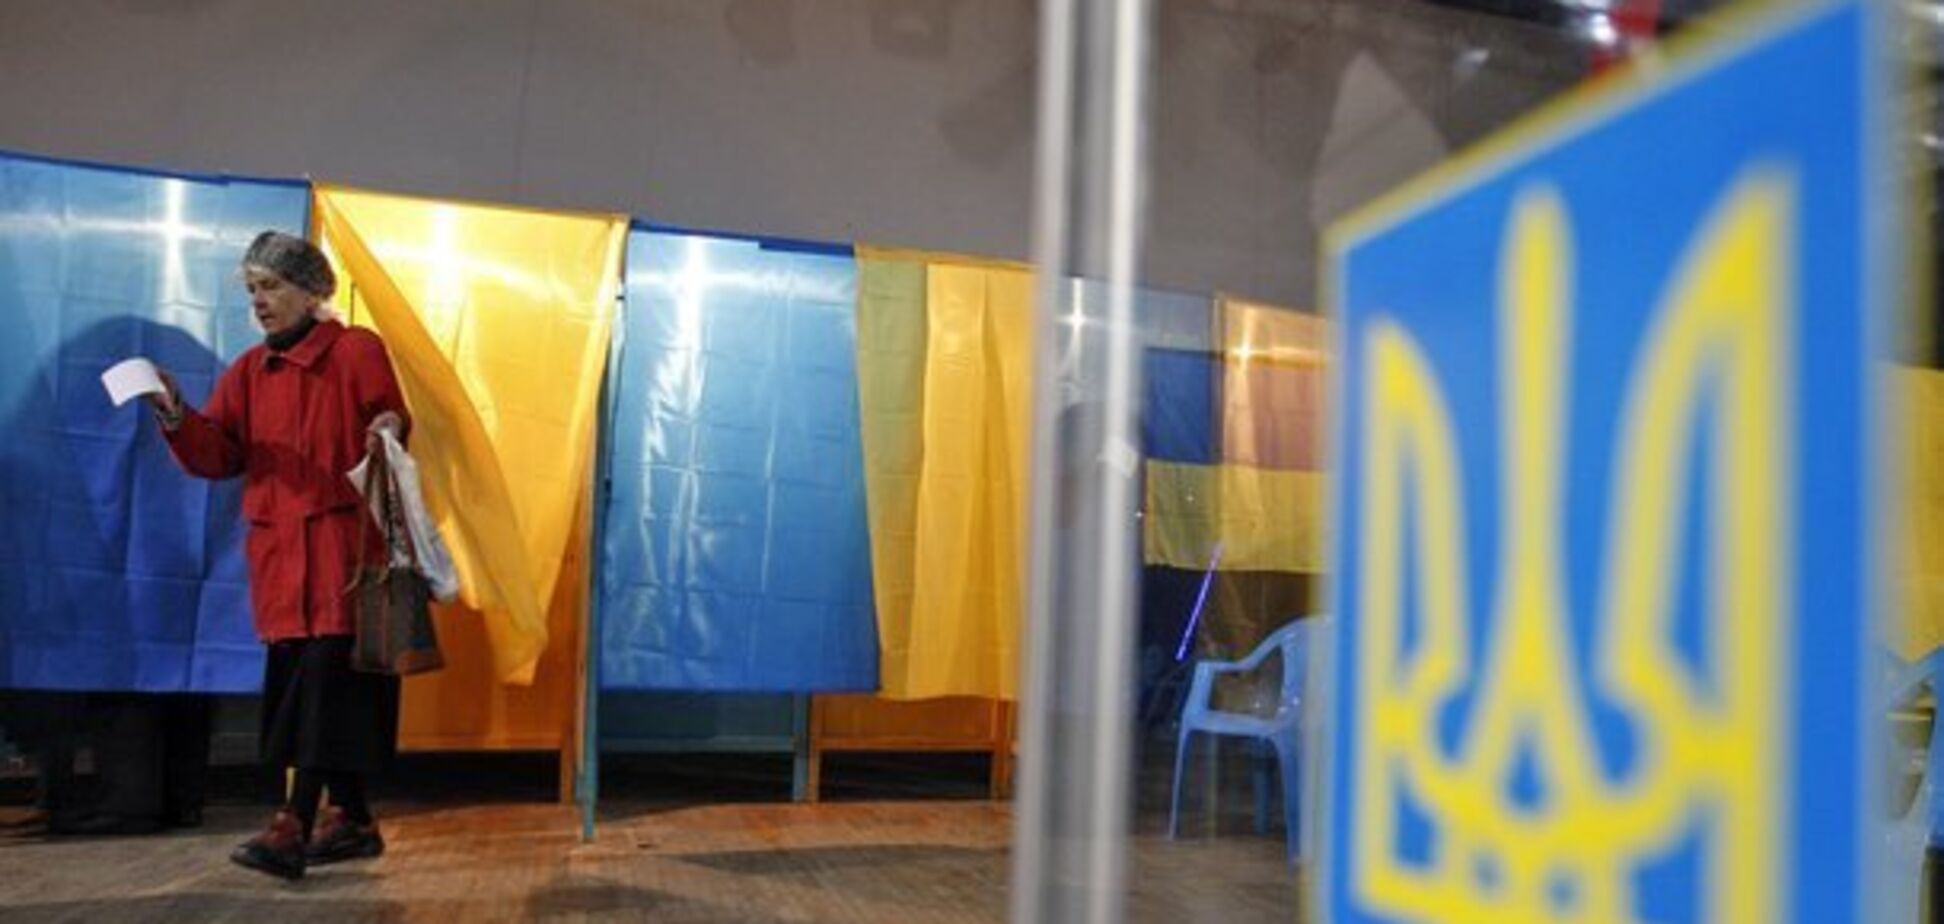  'Никогда не узнаем правды': украинцы высказались о кандидатах и выборах